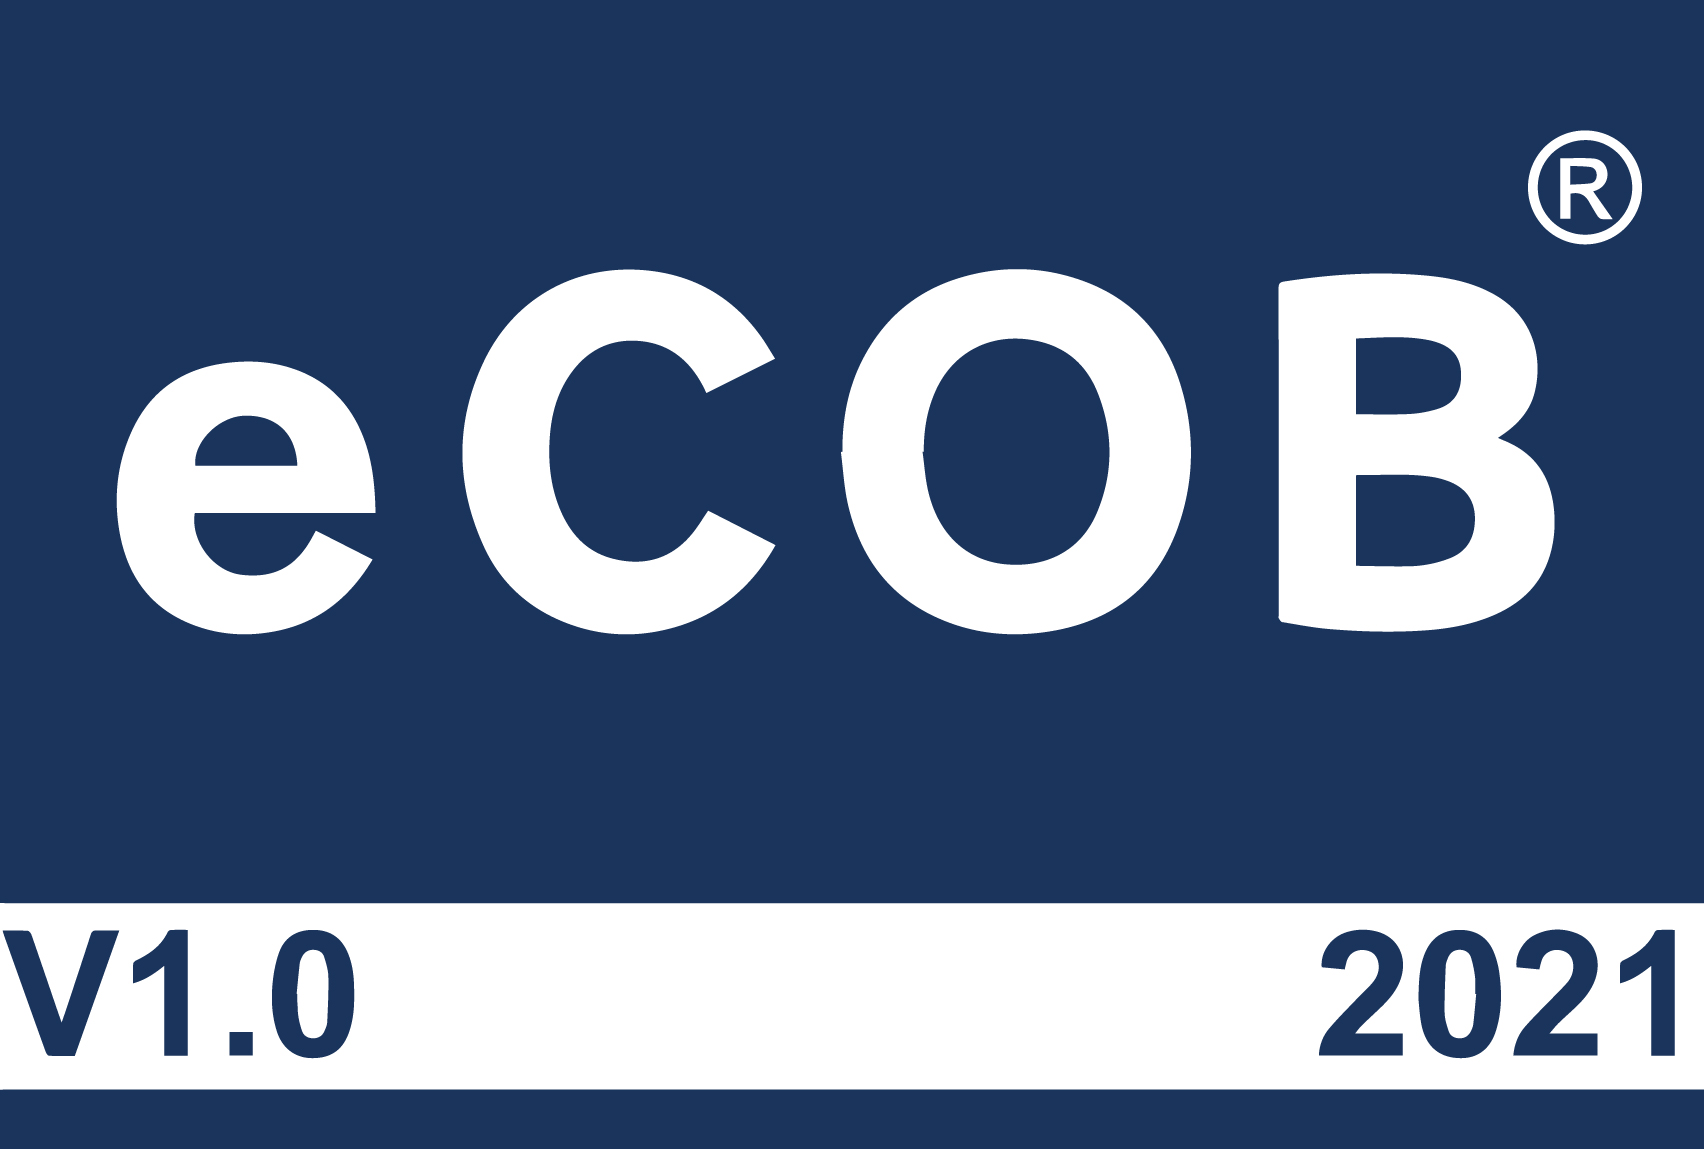 logo eCOB v1.0 2021